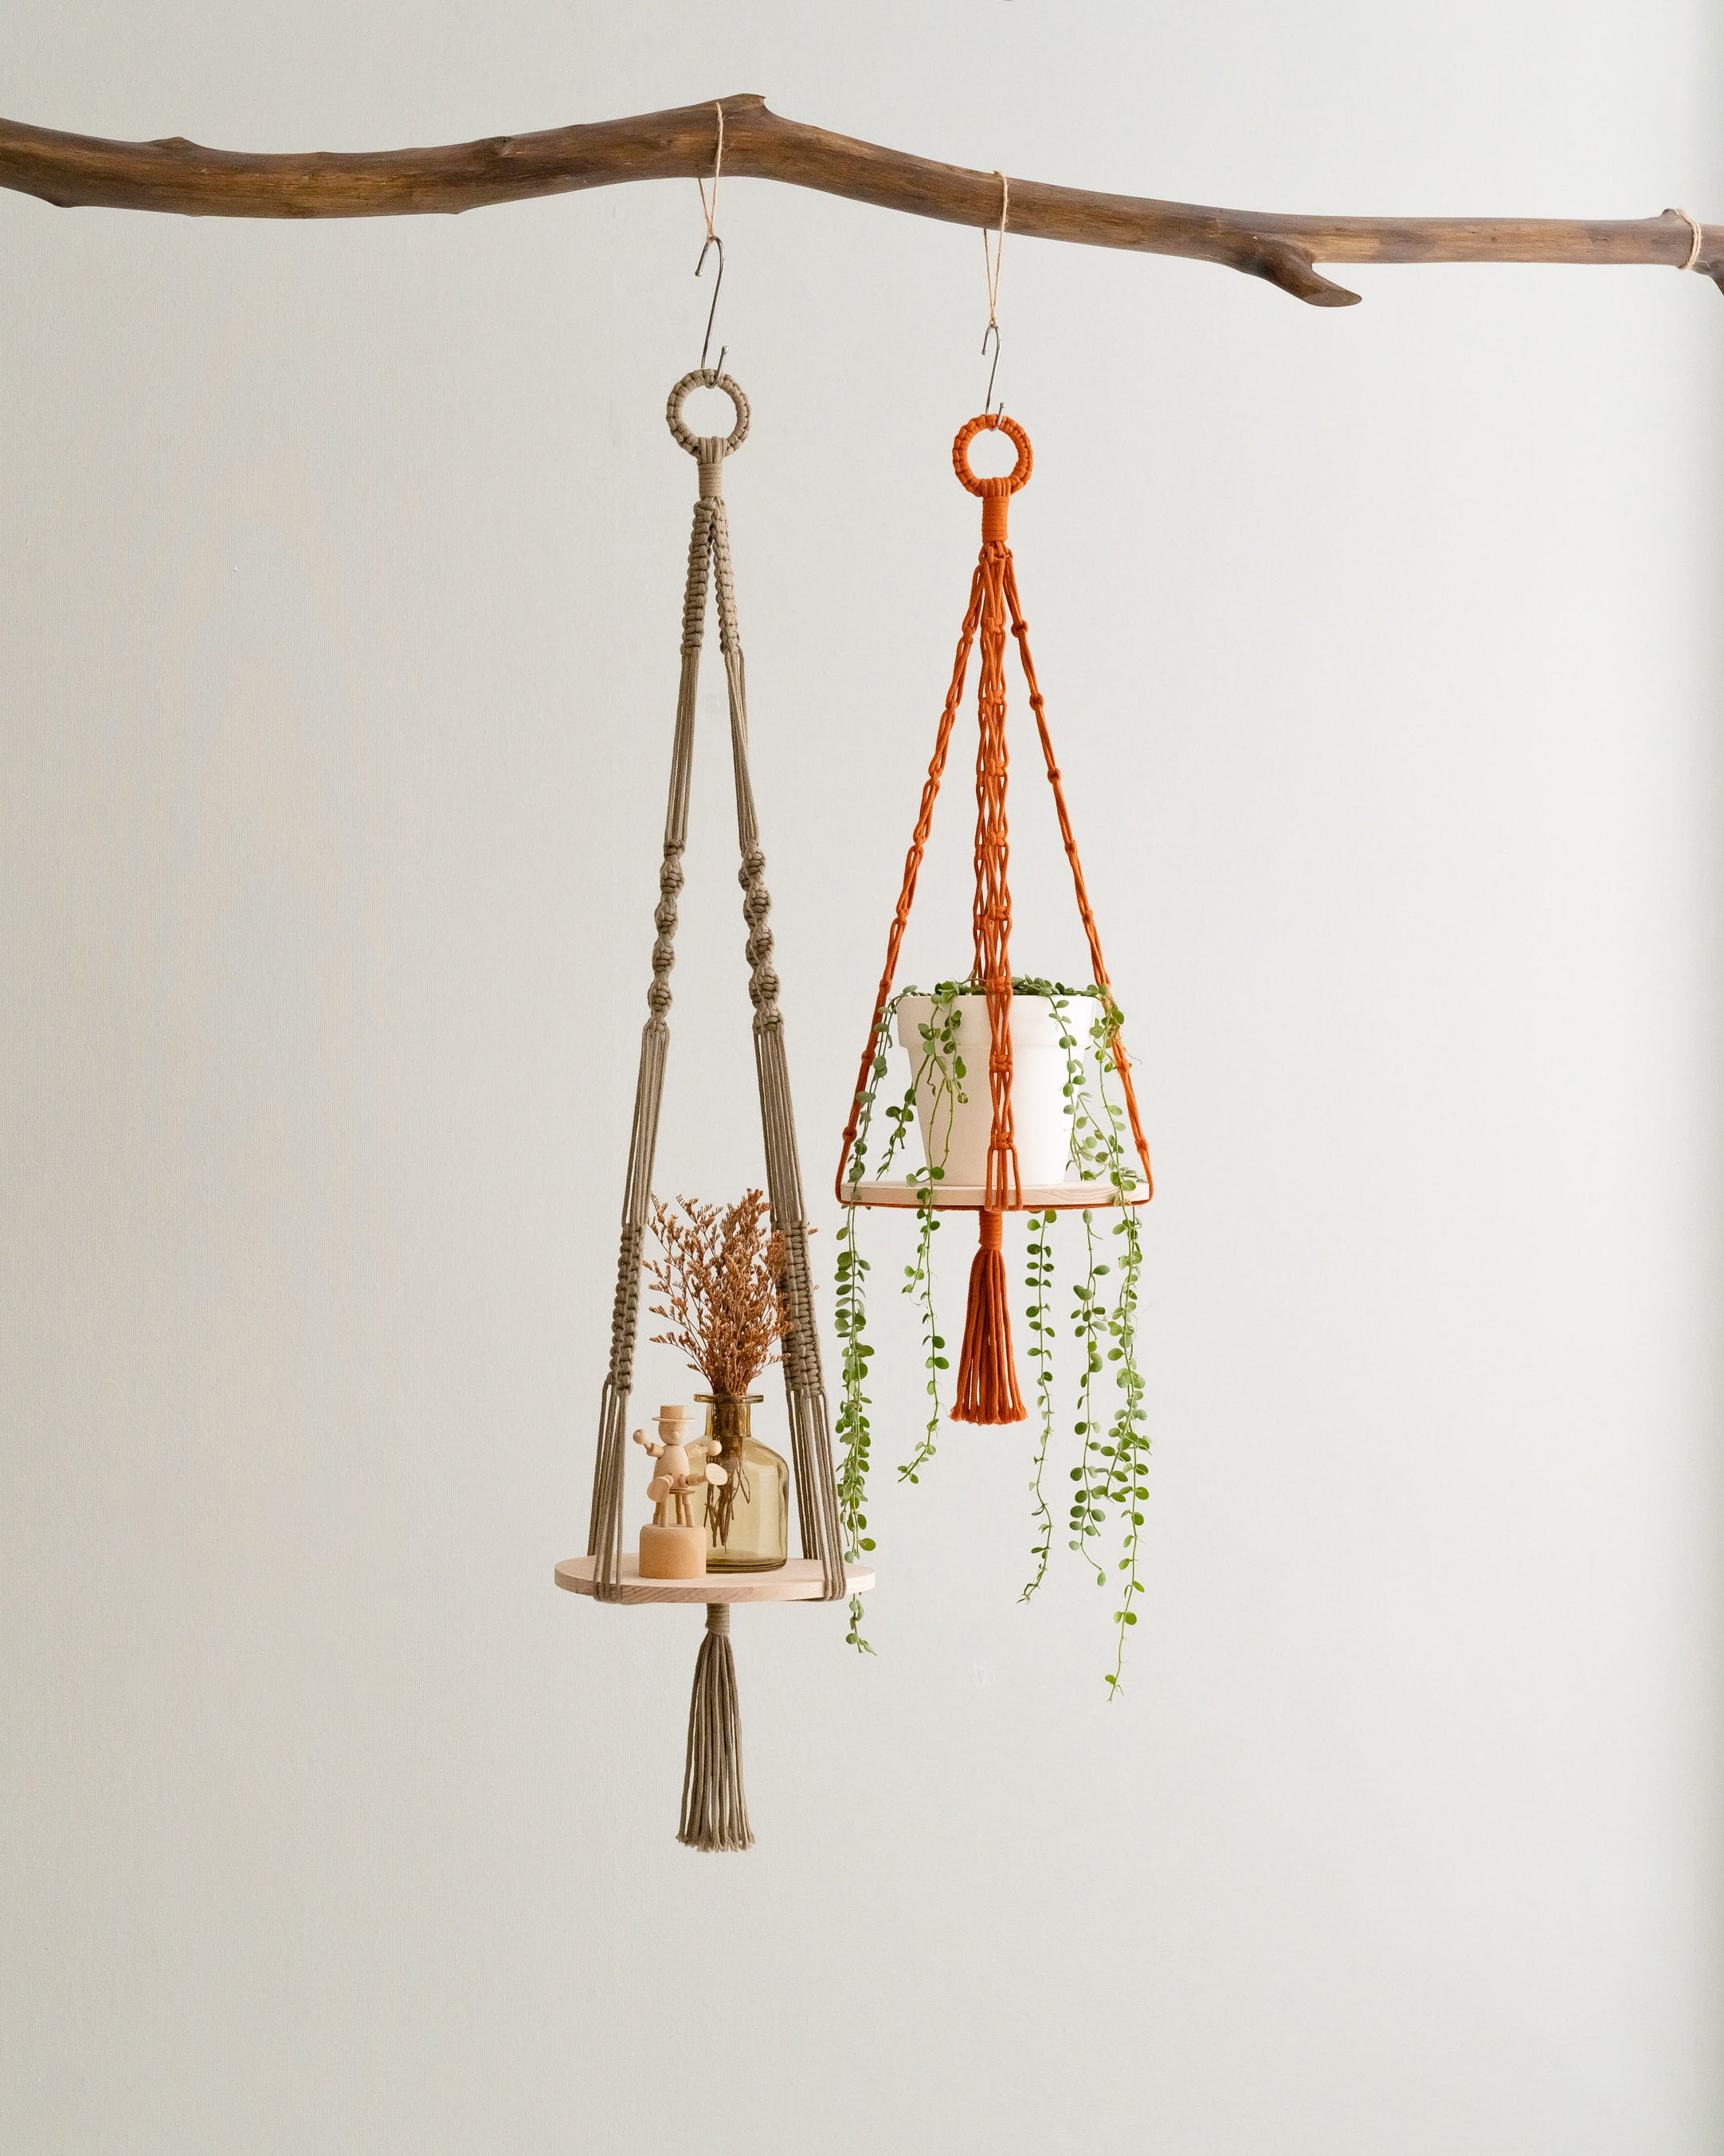 Wood Shelf Plant Holder for Modern Hanging Planters